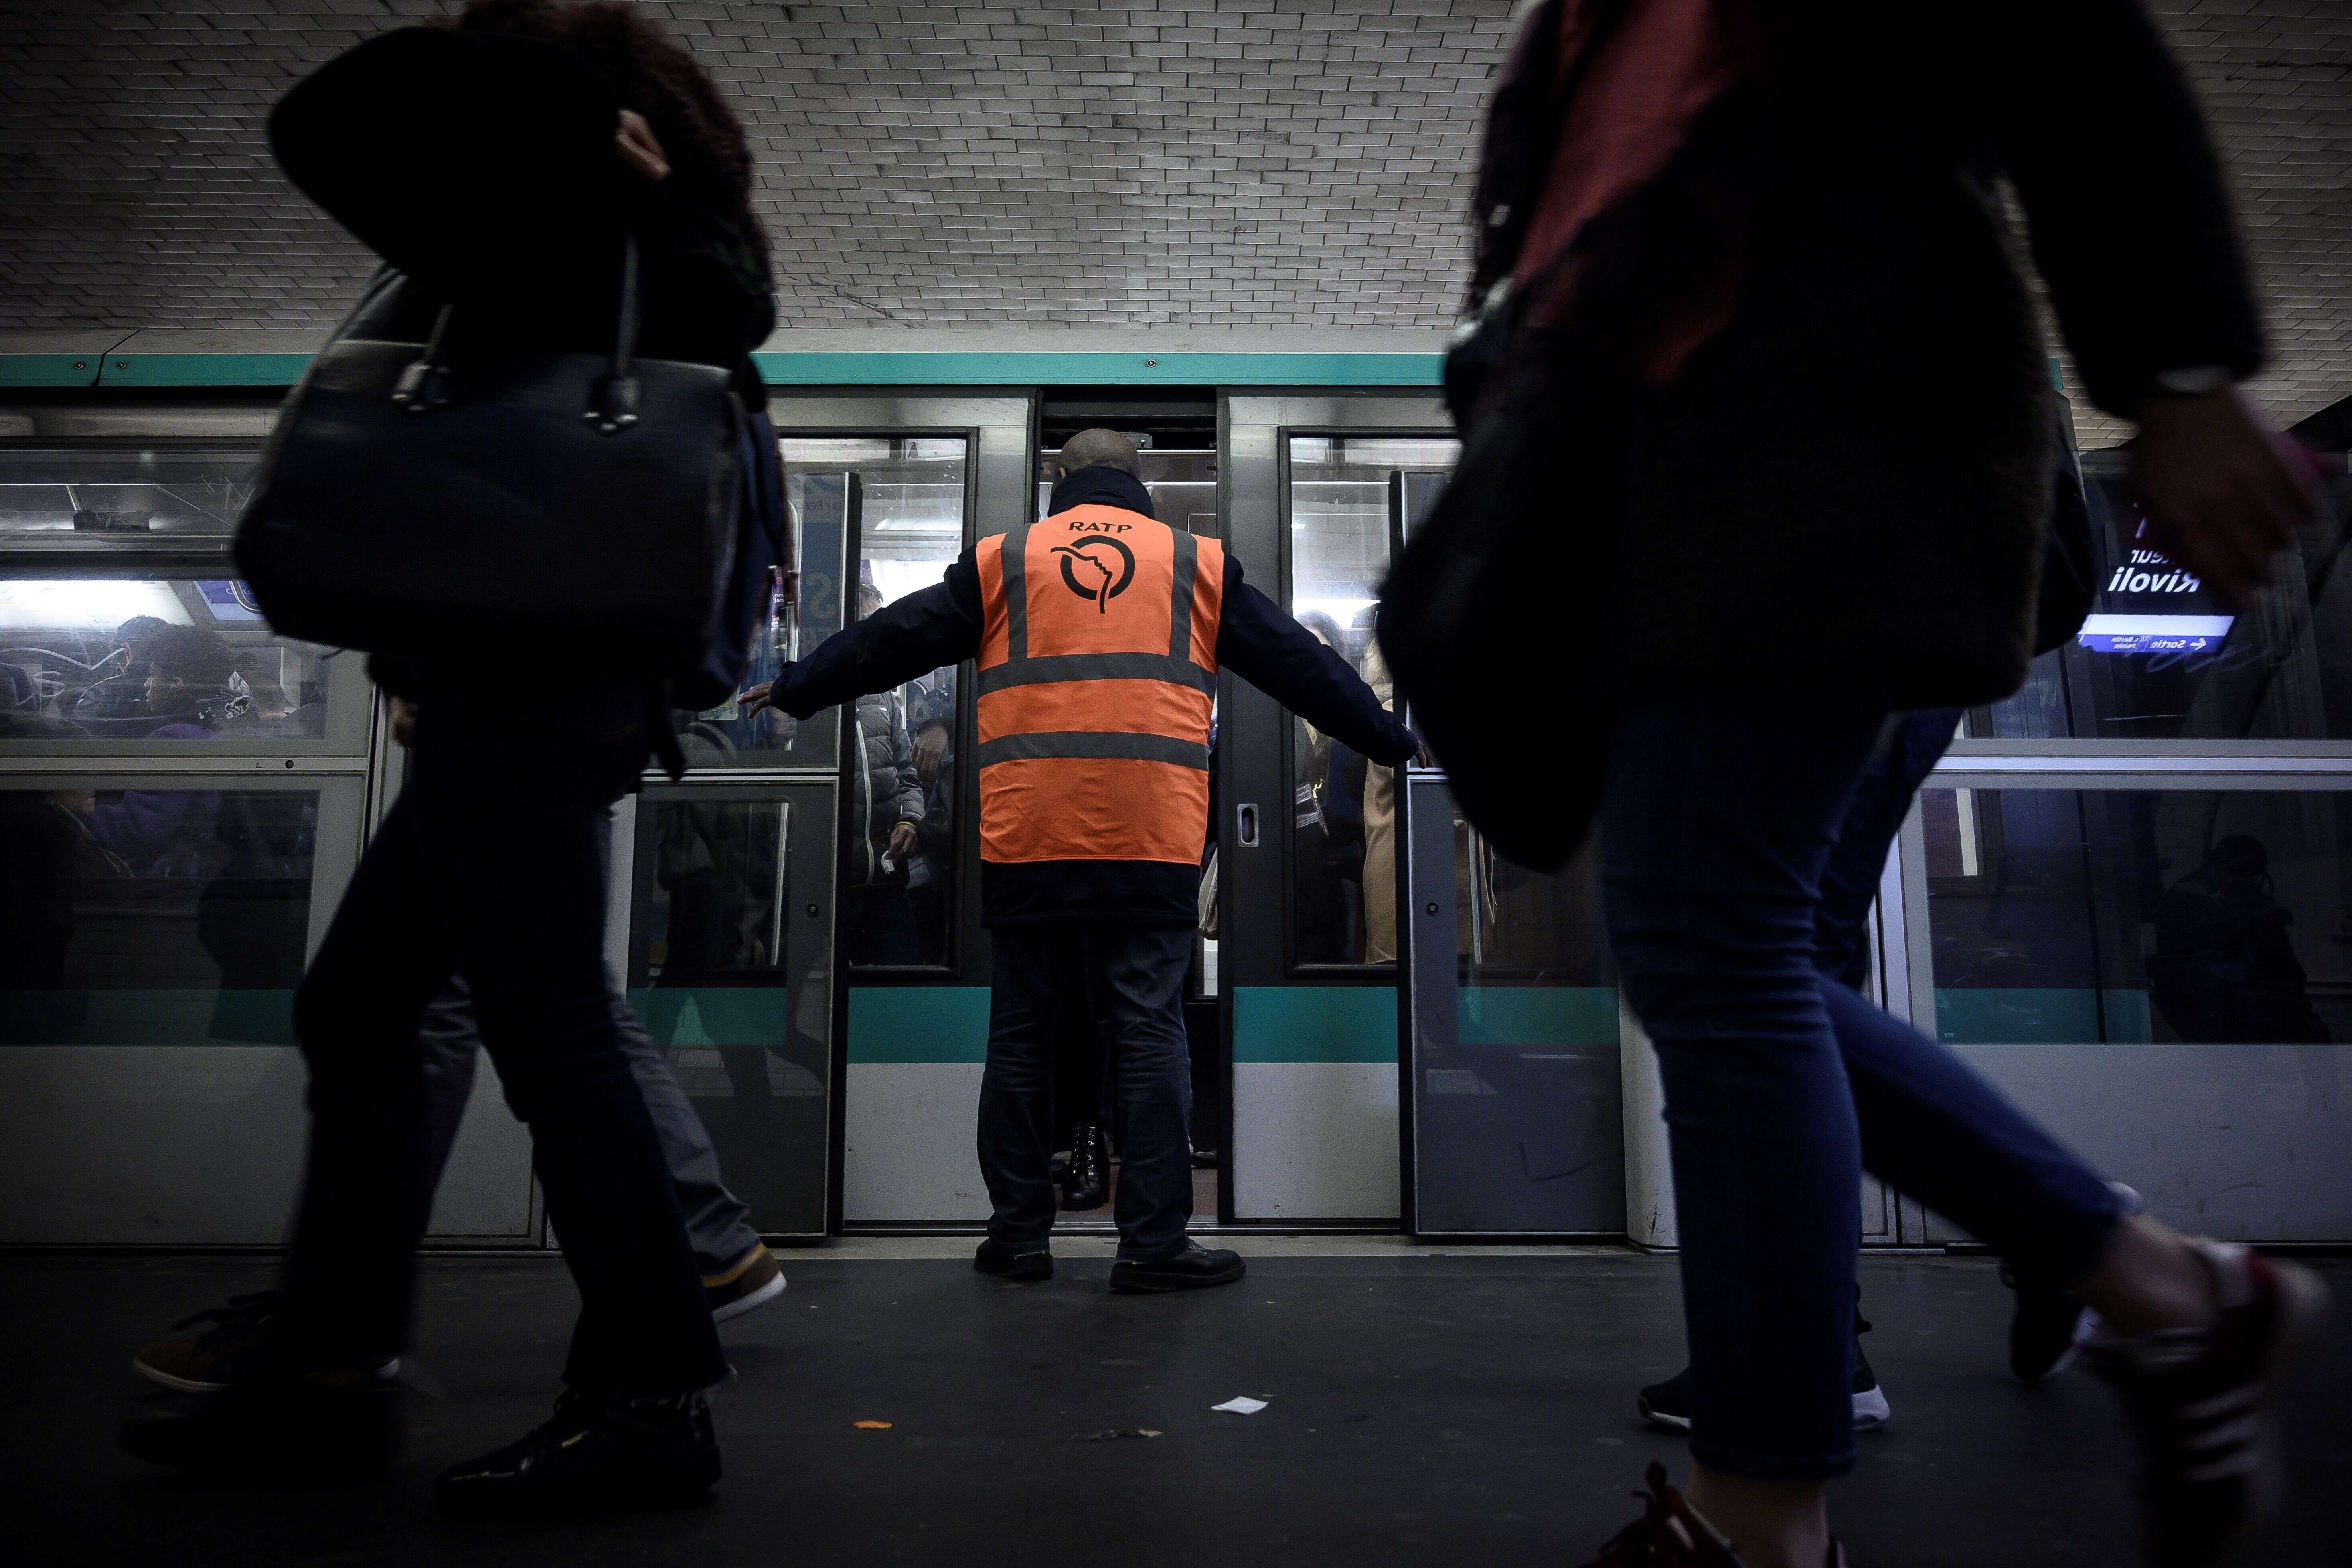 Plus que 6 lignes de métro entièrement fermées à Paris, le trafic s'arrange (un peu) jeudi